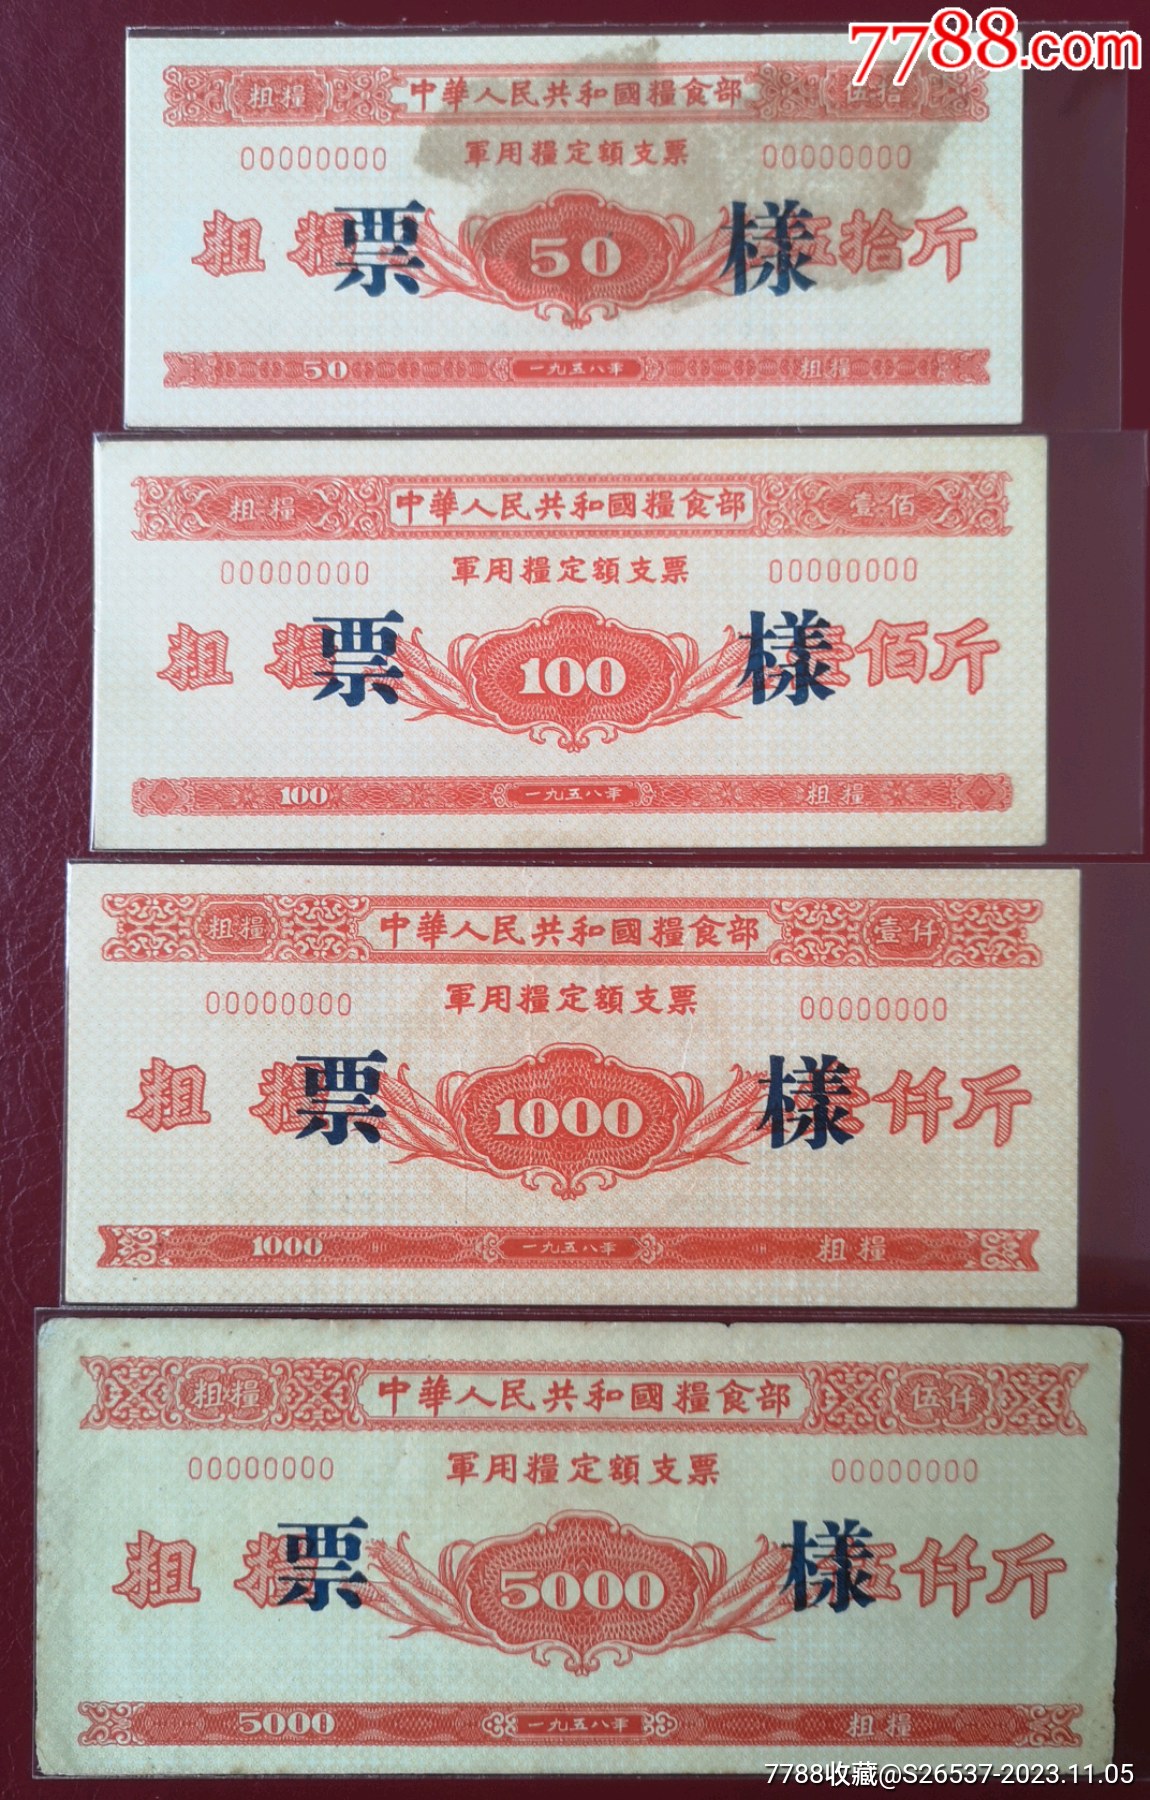 1958中華人民共和國糧食部*用糧定額支票《樣張》16全_價格14318元_第3張_